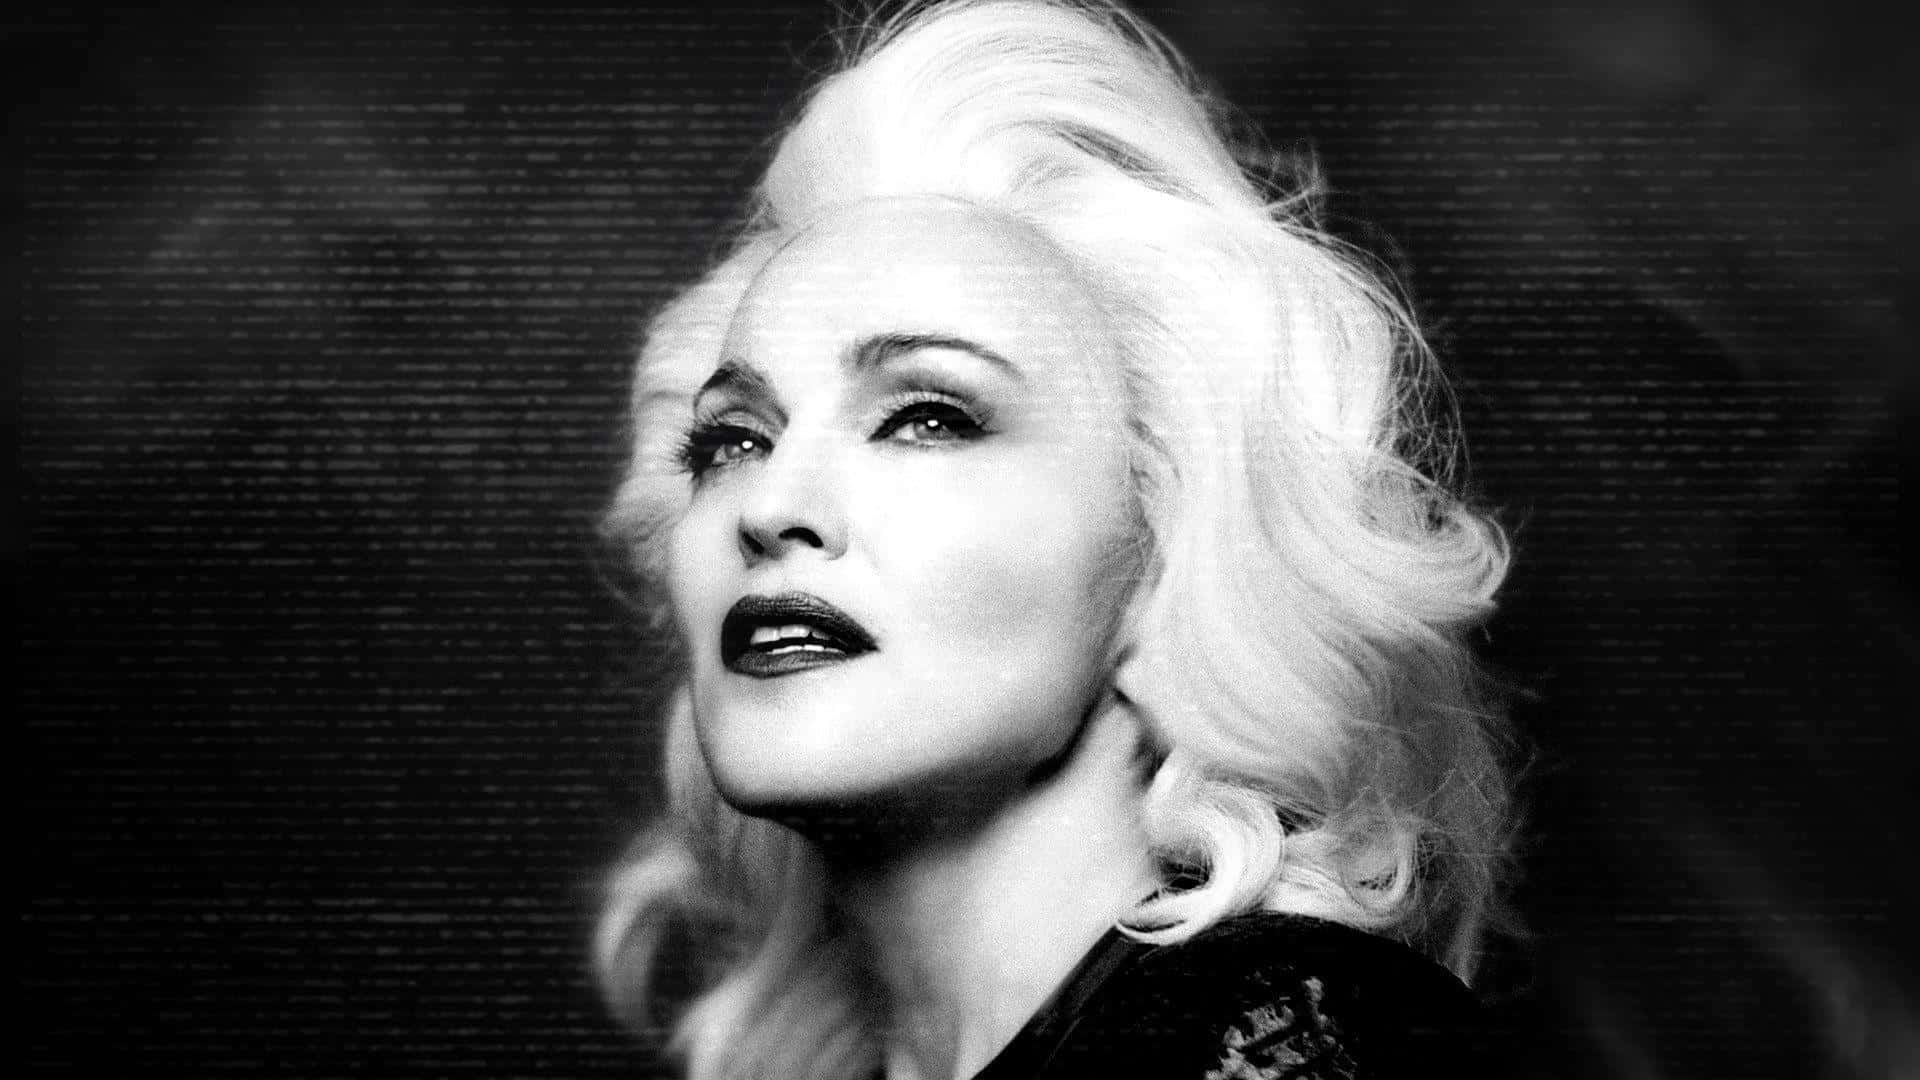 Madonnaem Seu Icônico Cabelo Loiro E Trajes Atrevidos.